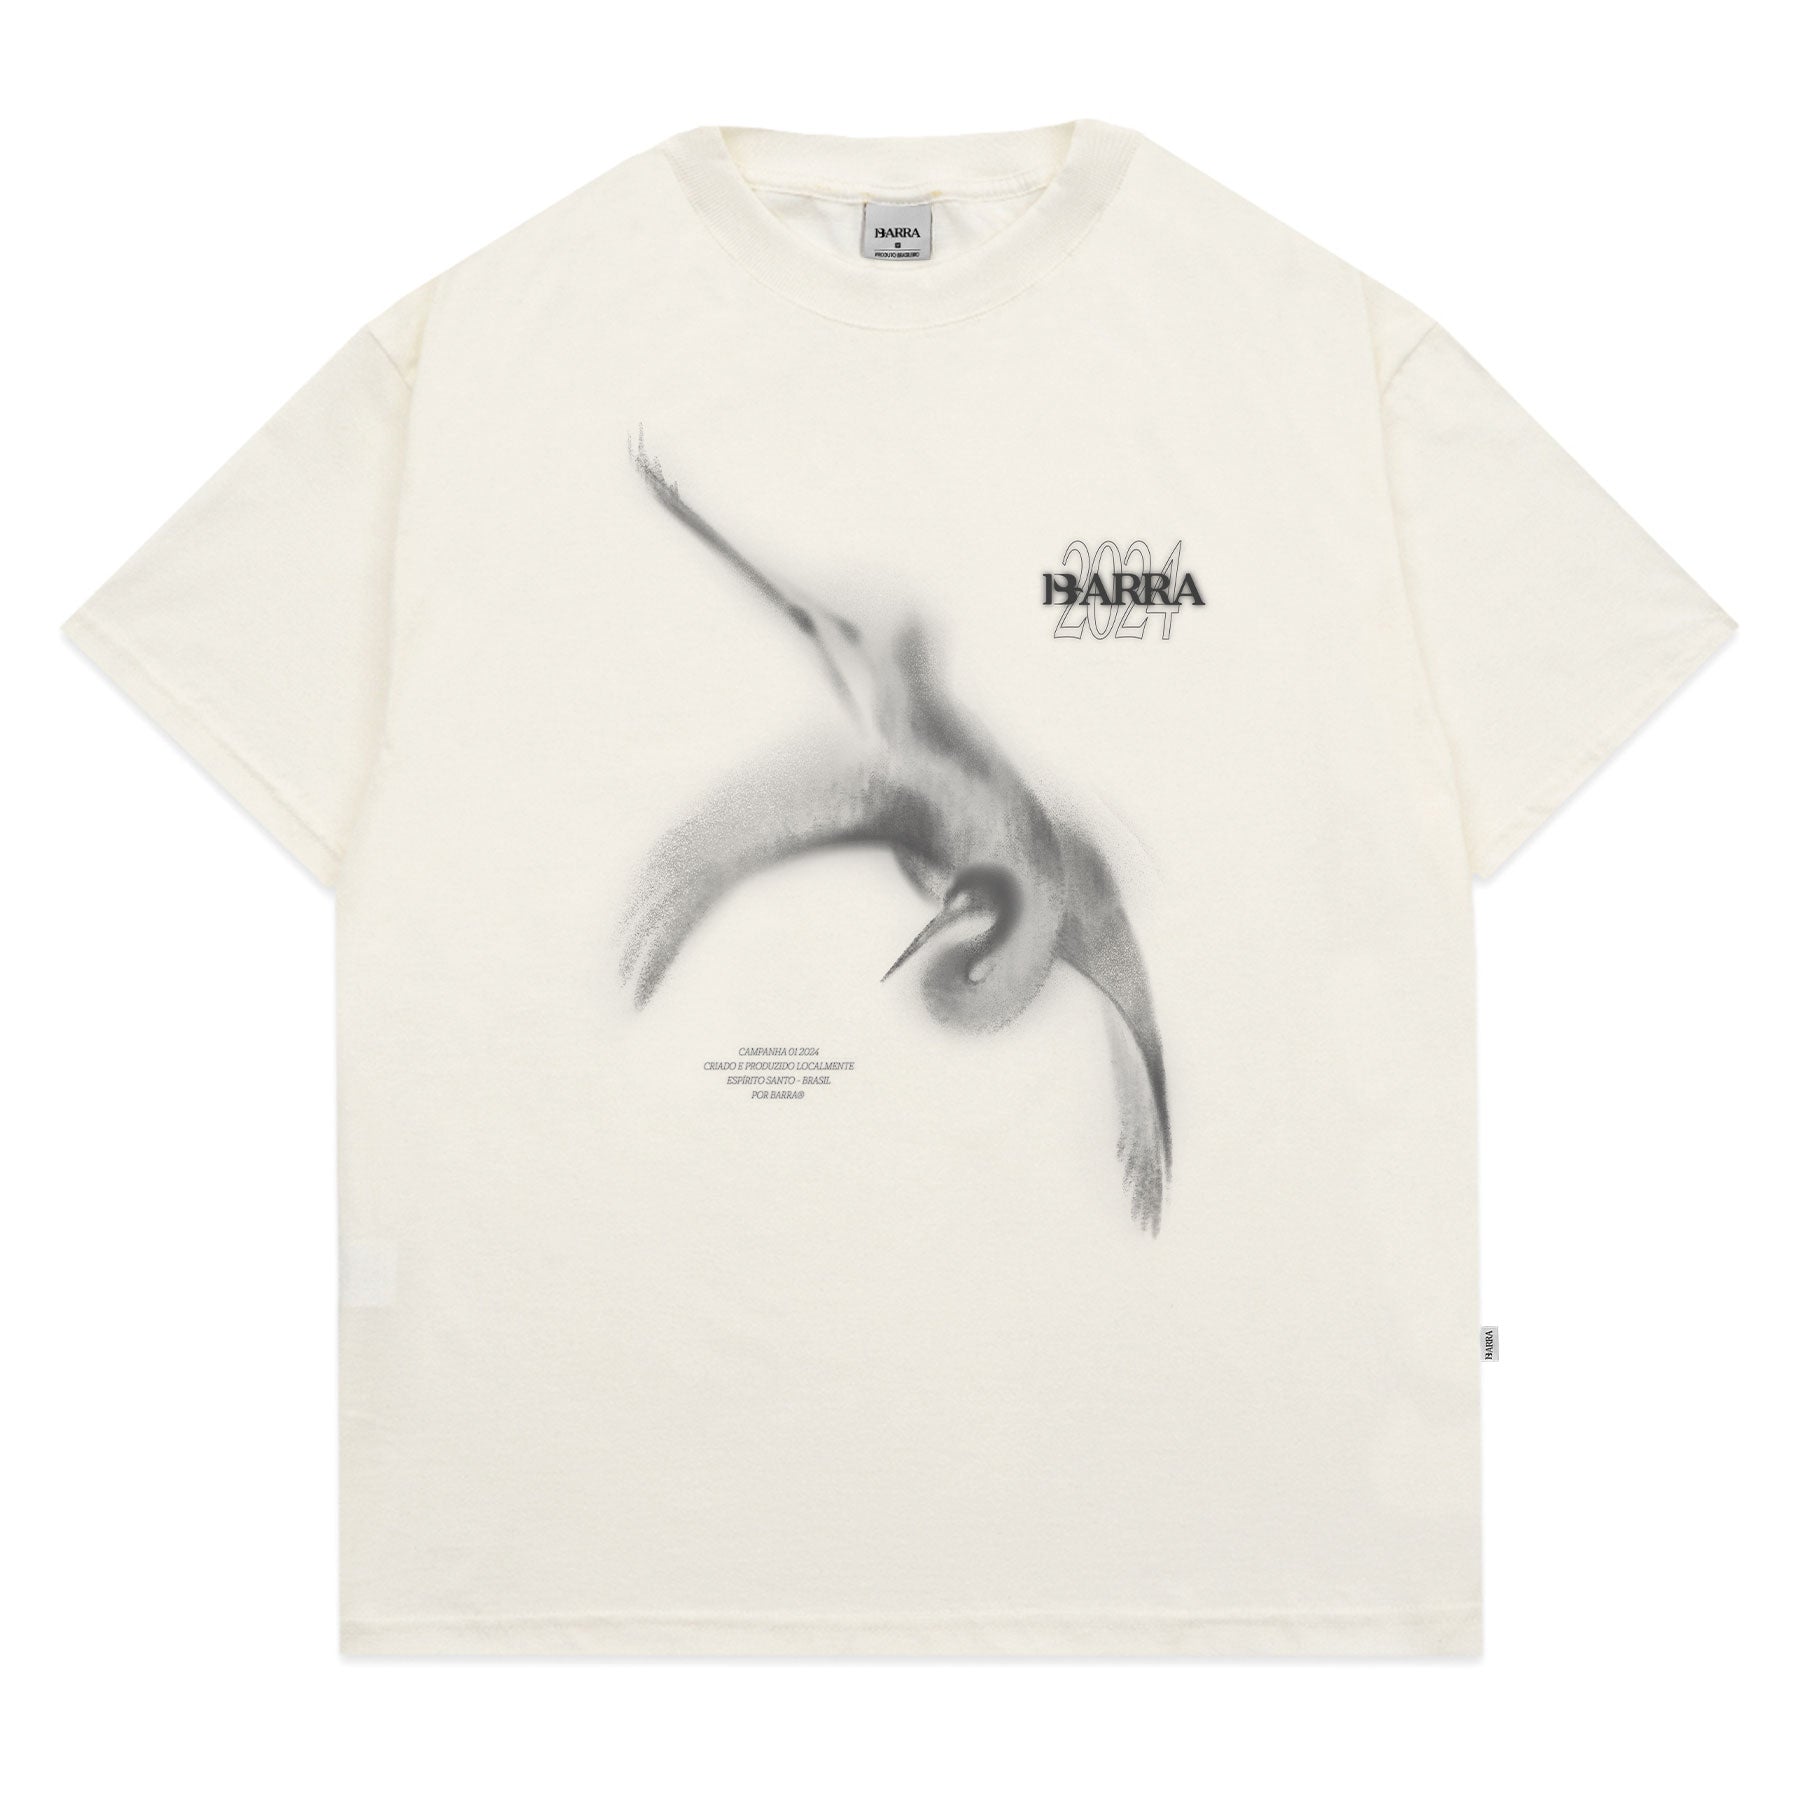 Barra Crew - Camiseta Ahlma Espectro Off White